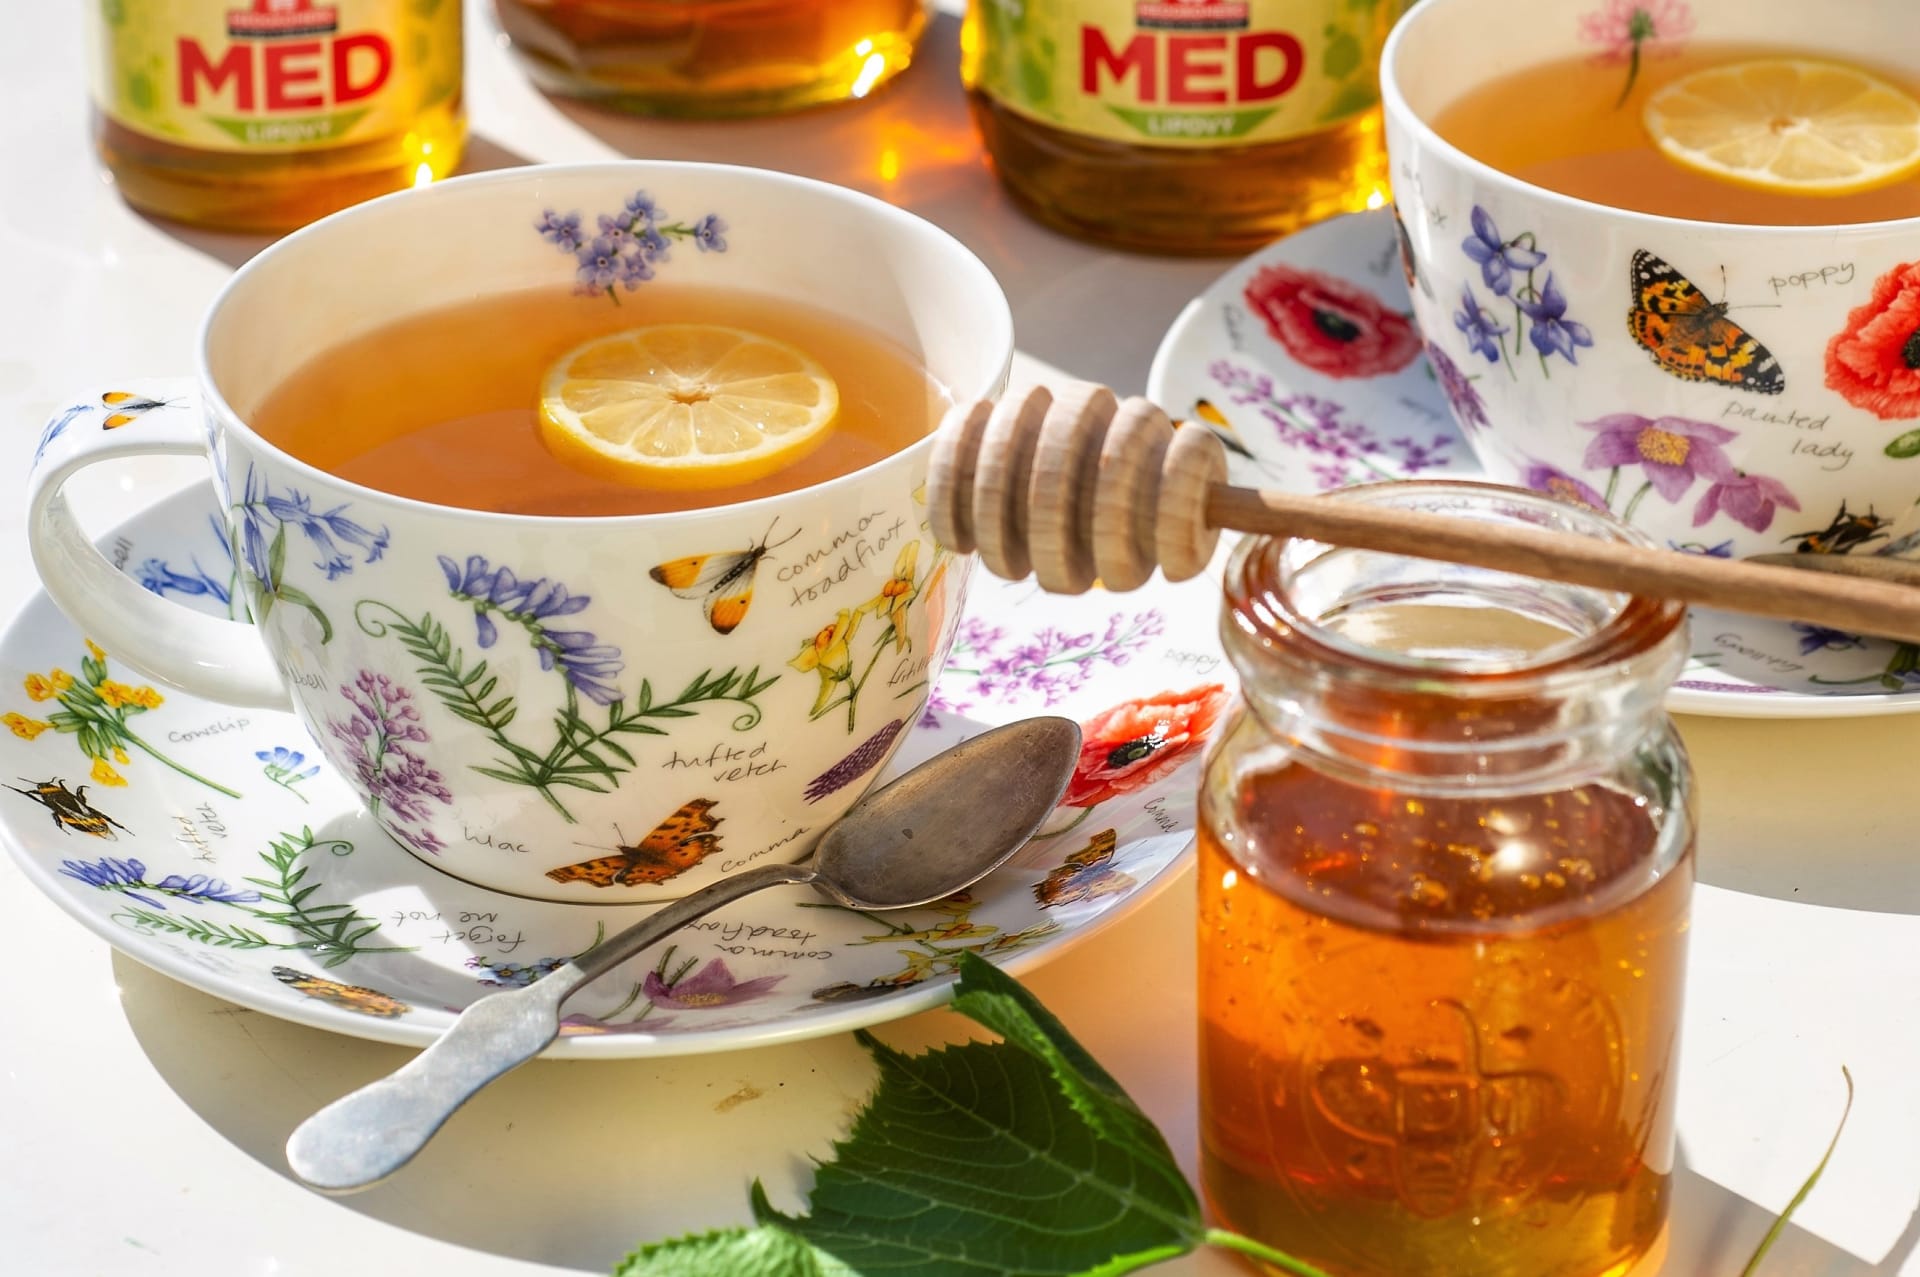 Při prvních náznacích nachlazení většinou sáhneme po čaji s medem, jelikož včelí med je osvědčeným pomocníkem proti bolestem v krku, kašli i rýmě.